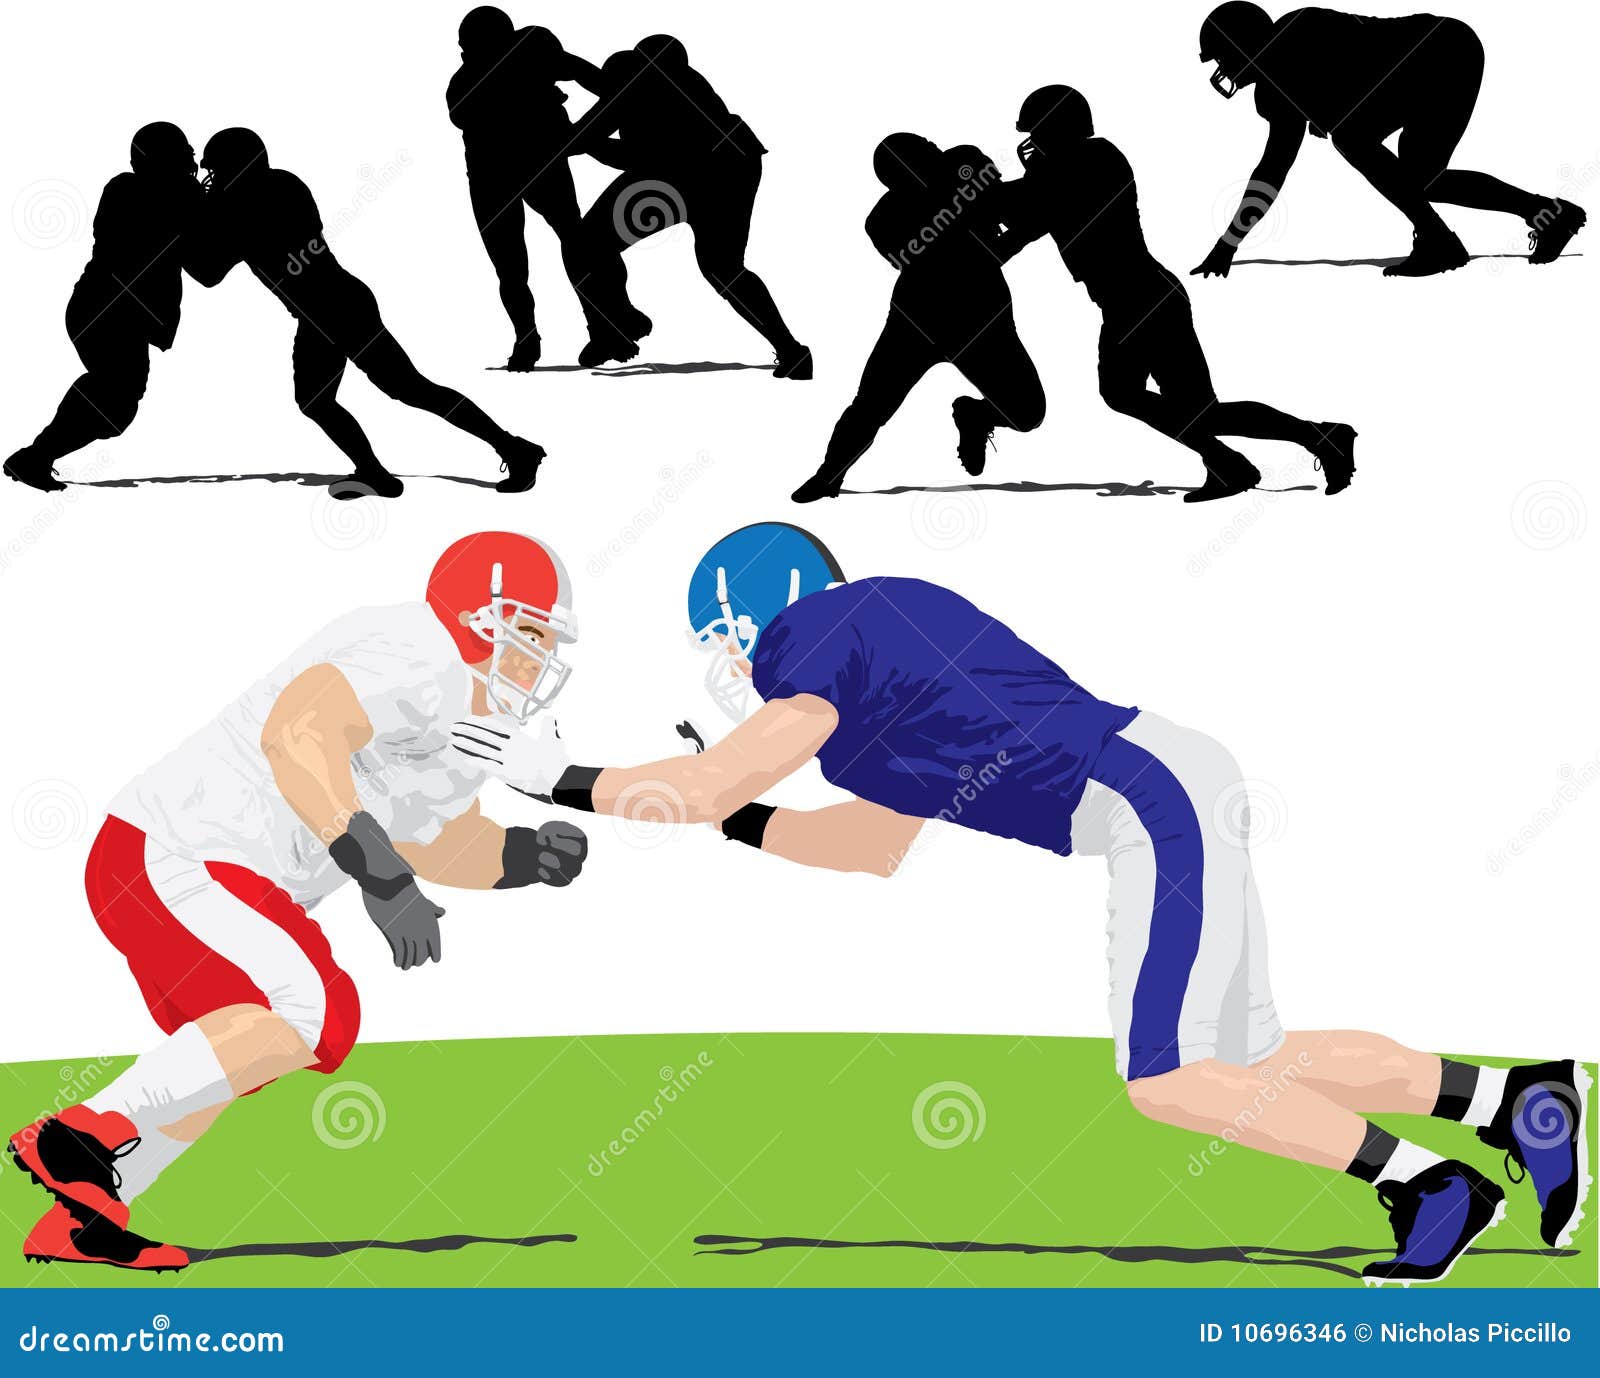 Football Tackling Stock Illustrations – 1,501 Football Tackling Stock  Illustrations, Vectors & Clipart - Dreamstime